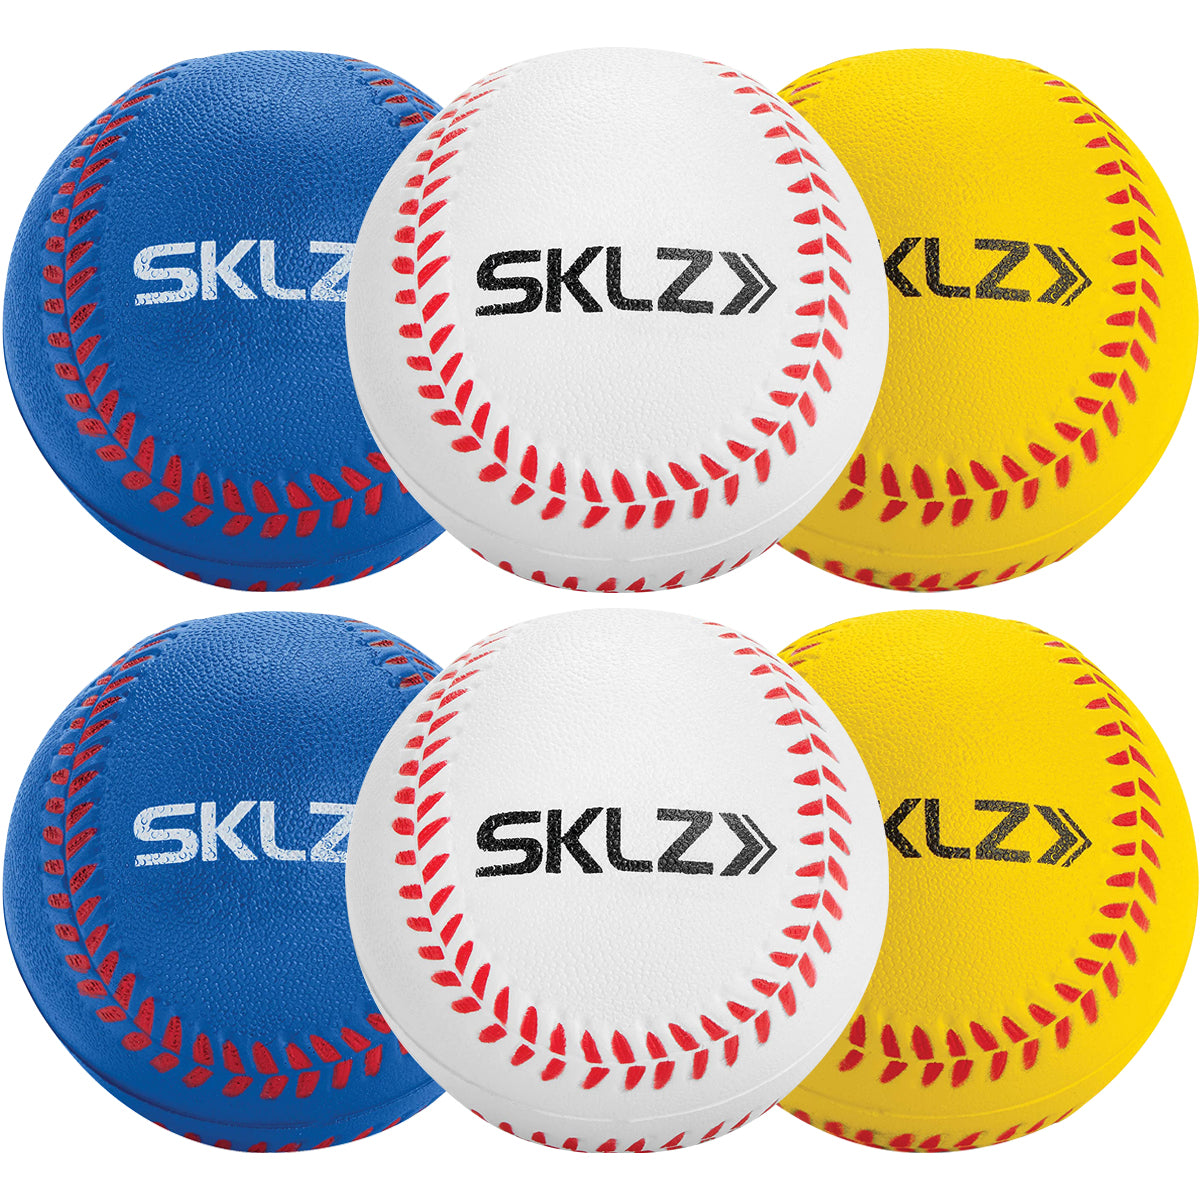 SKLZ Foam Training Baseballs 6-Pack - White/Yellow/Blue SKLZ